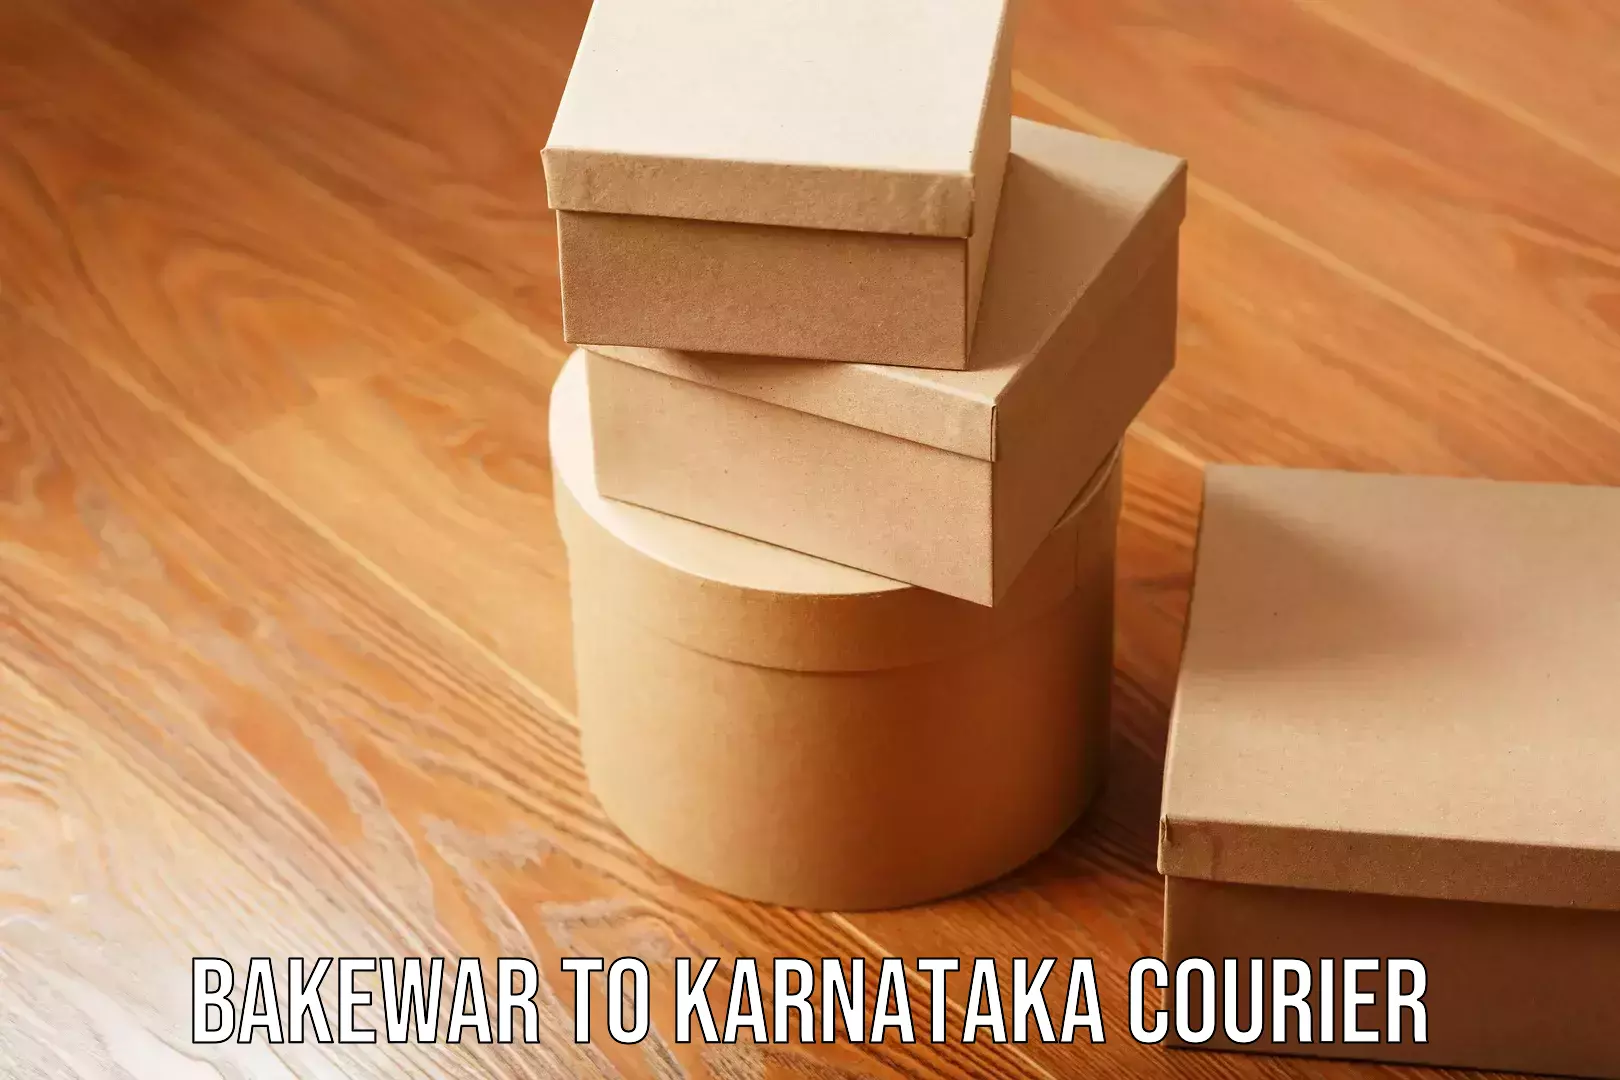 Professional courier handling Bakewar to Karnataka